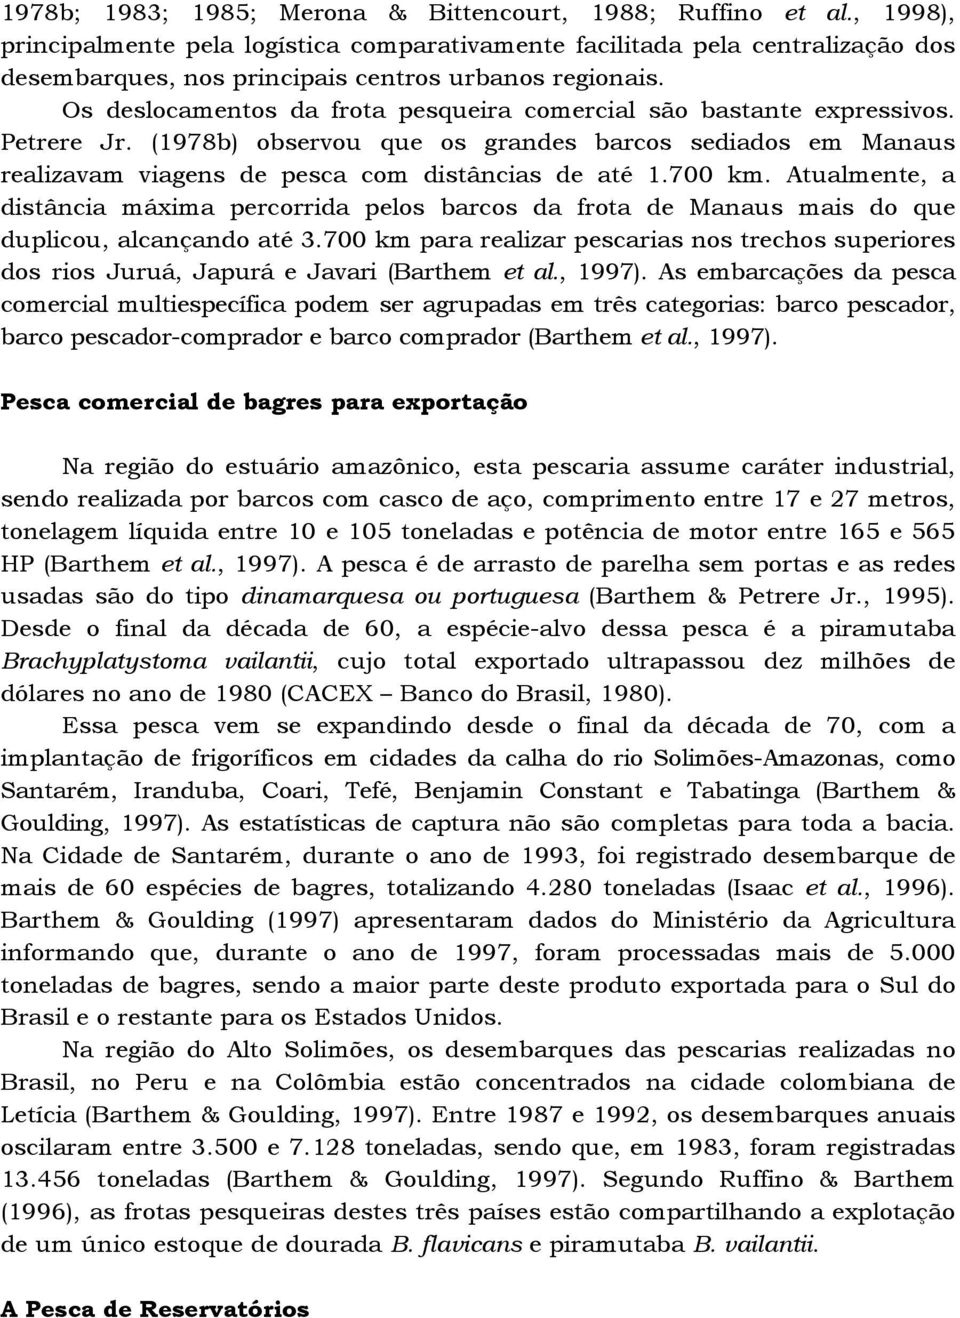 Os deslocamentos da frota pesqueira comercial são bastante expressivos. Petrere Jr. (1978b) observou que os grandes barcos sediados em Manaus realizavam viagens de pesca com distâncias de até 1.